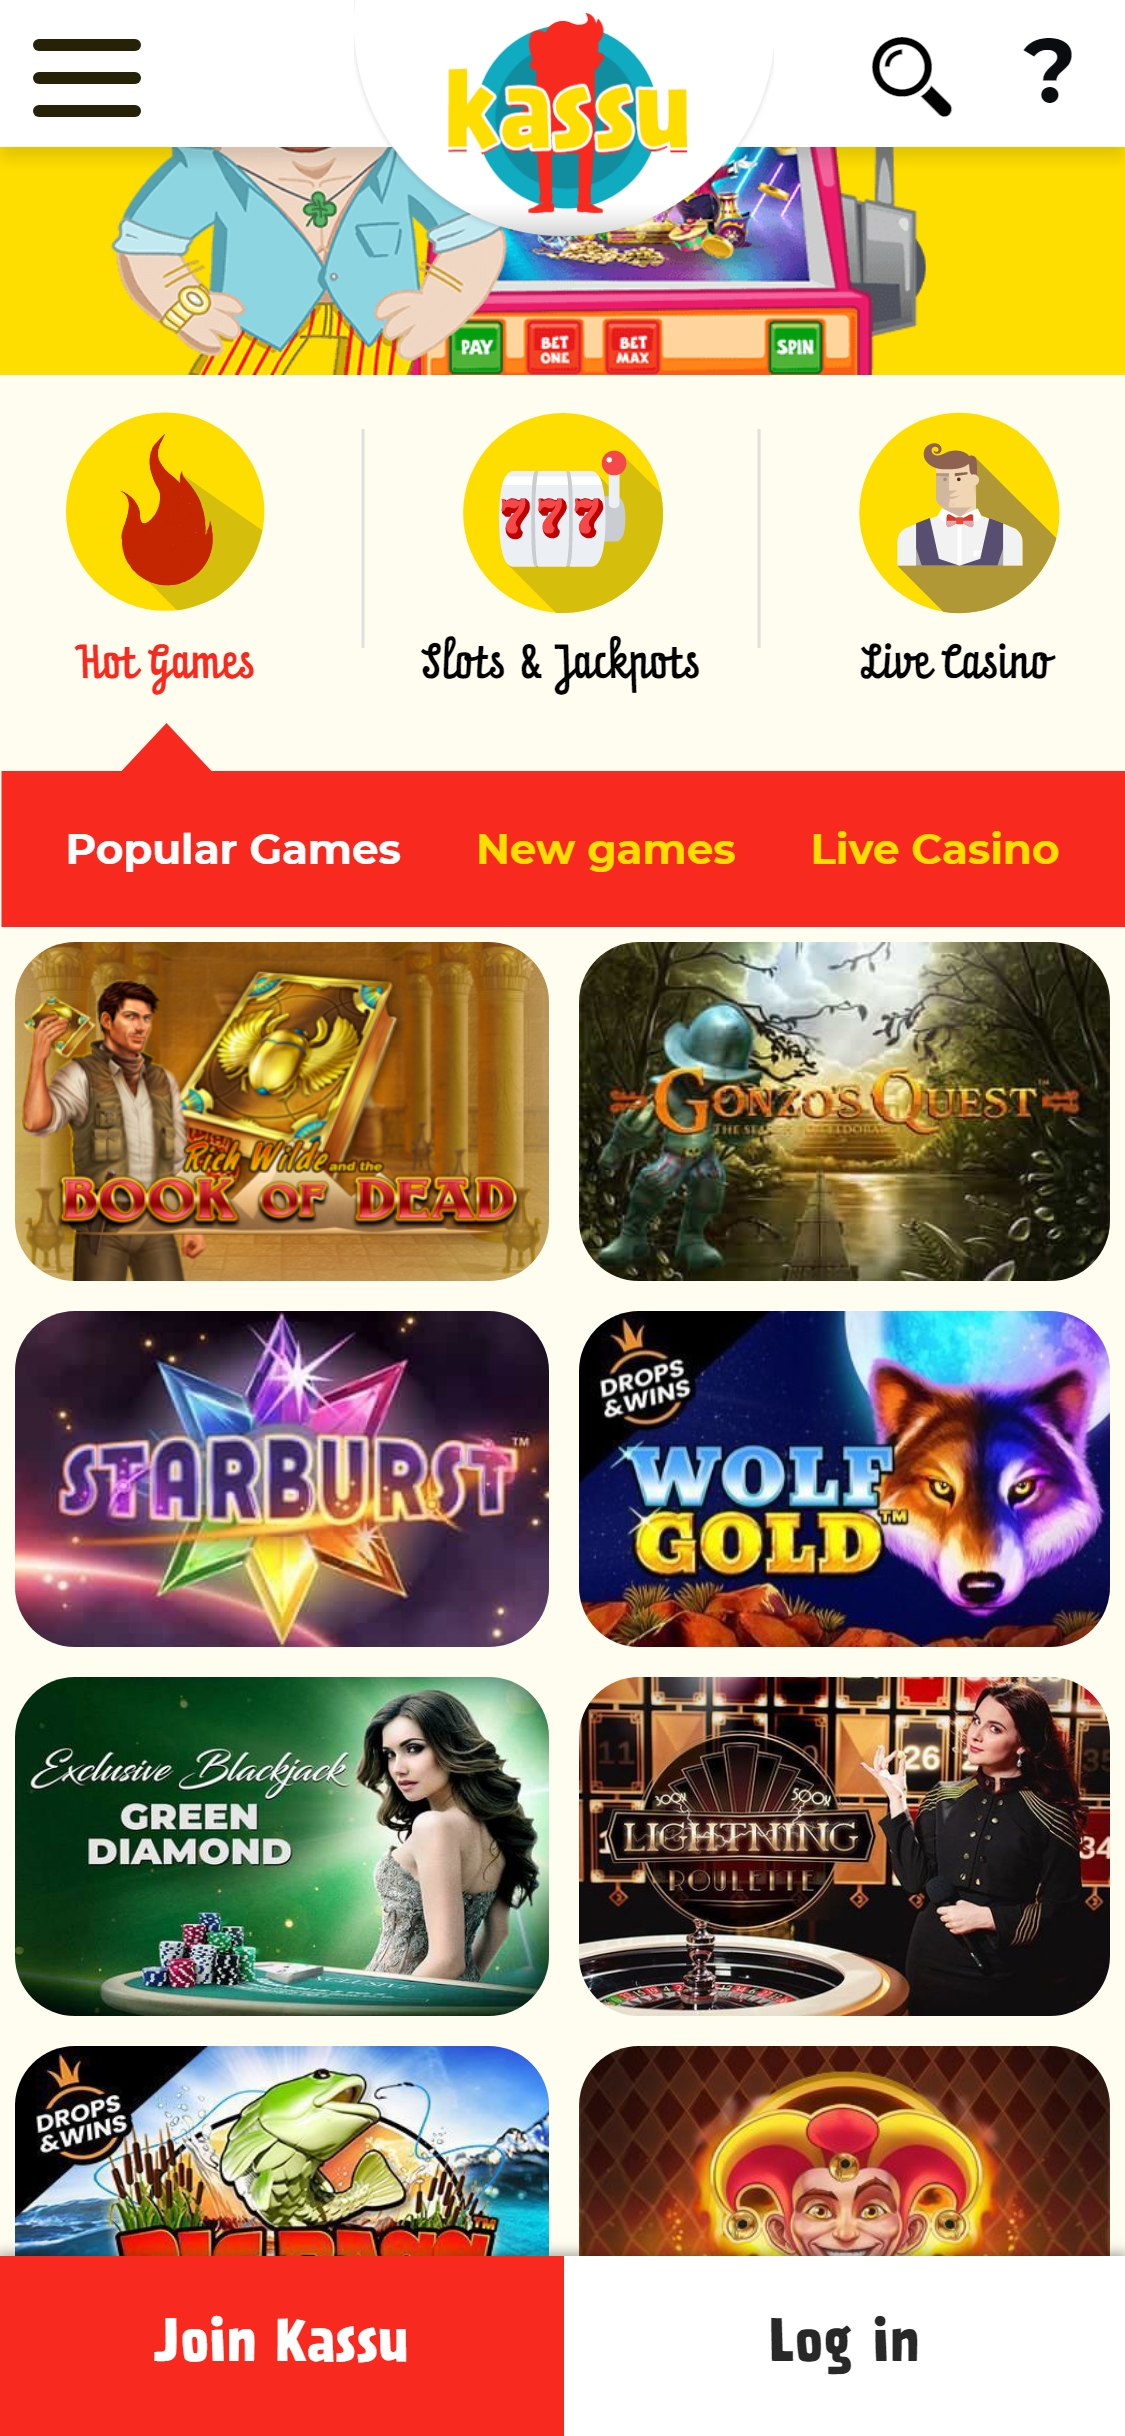 Kassu Casino Mobile Games Review